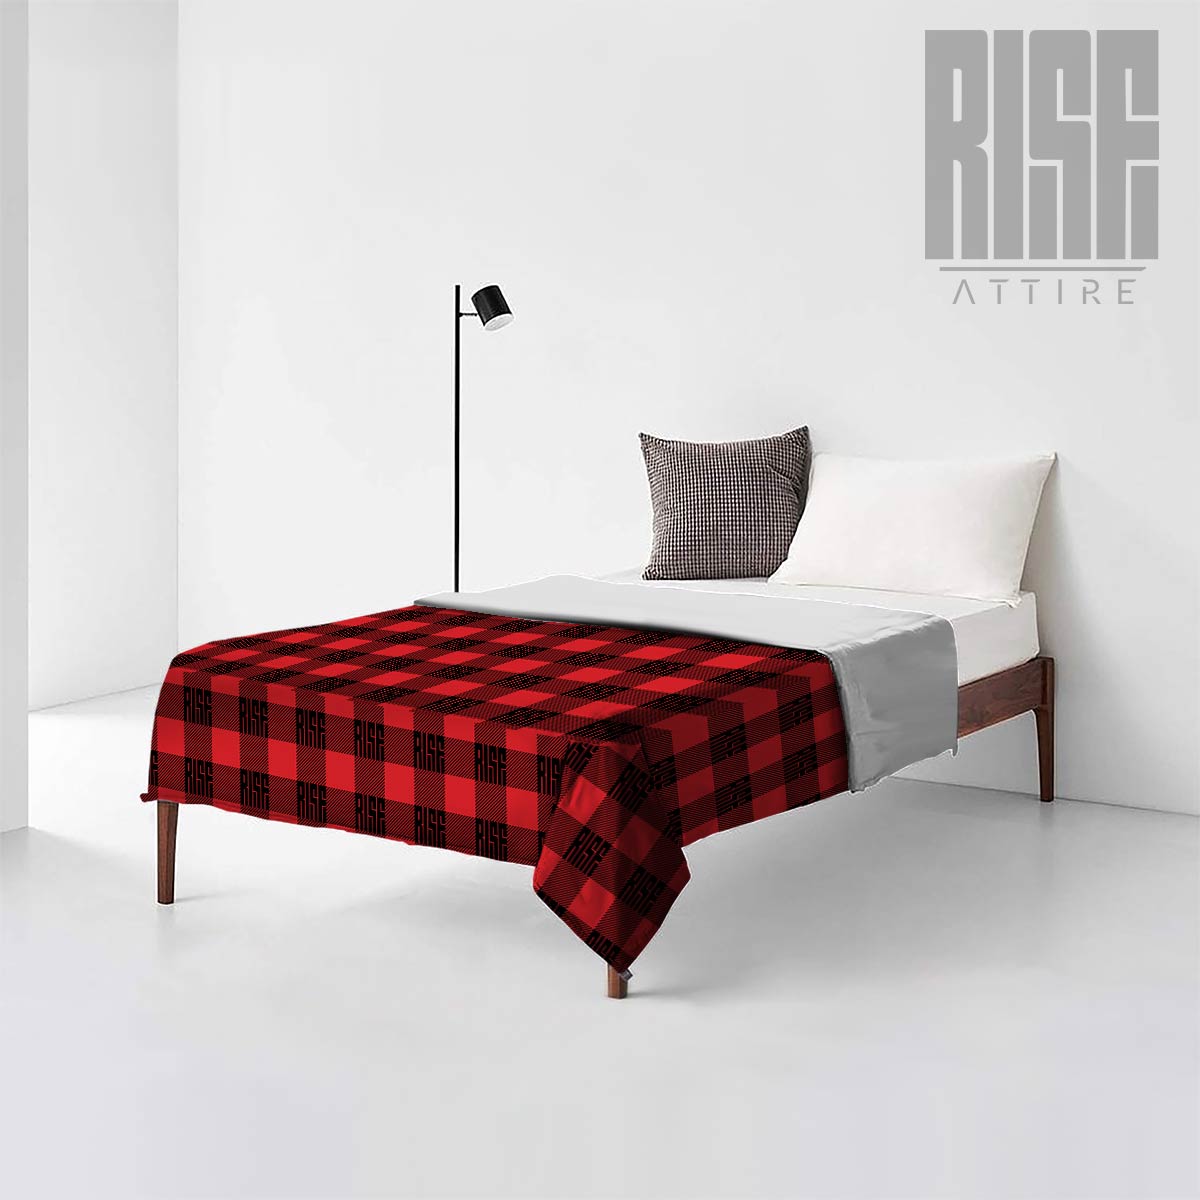 RISE Lumberjack v1.0 // Plush Blankets // RISE Attire